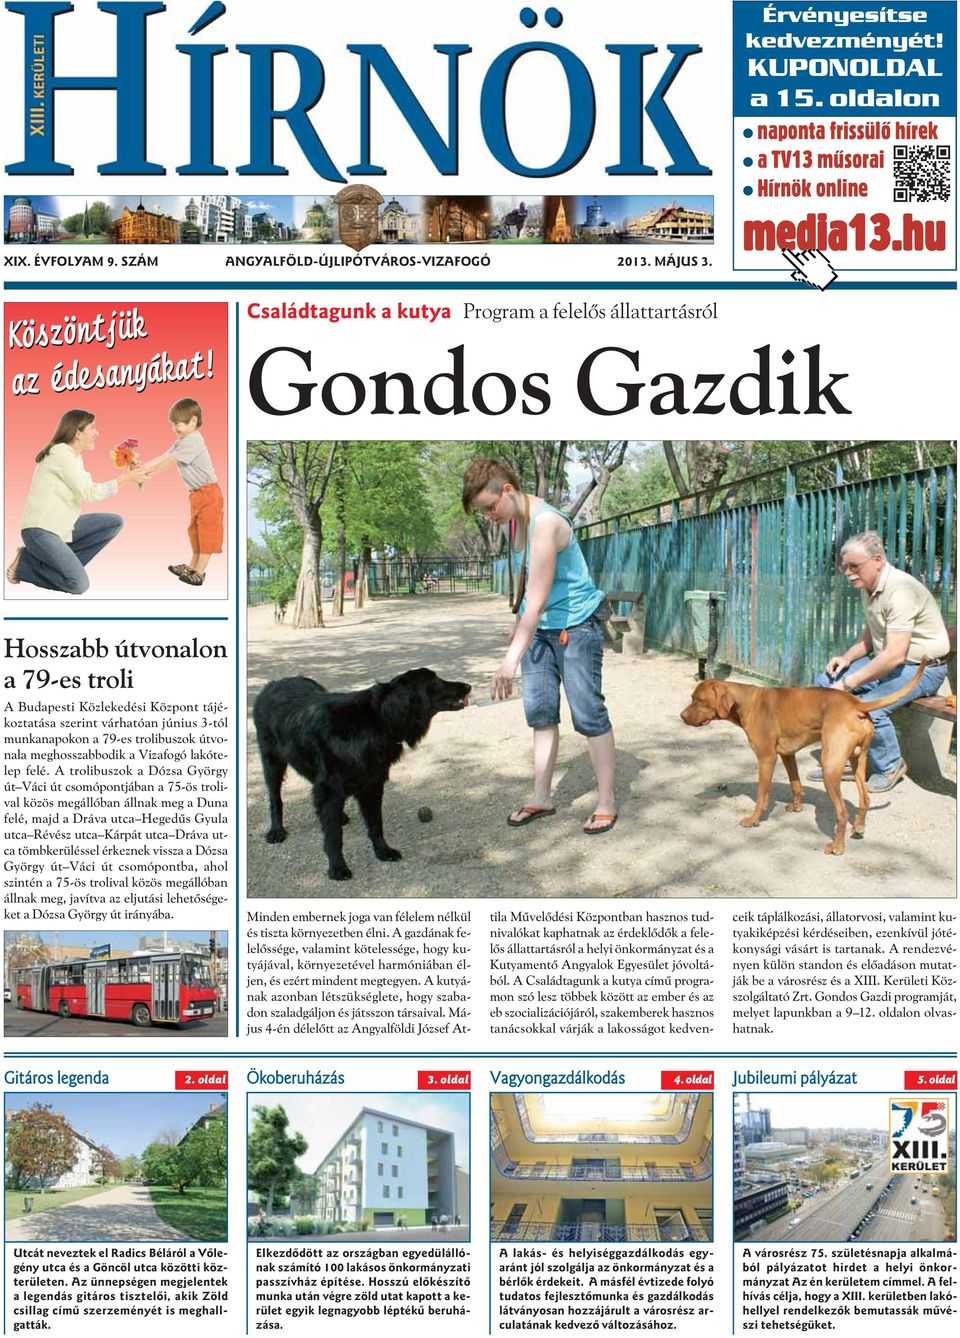 Családtagunk a kutya Program a felelõs állattartásról Gondos Gazdik Hosszabb útvonalon a 79-es troli A Budapesti Közlekedési Központ tájékoztatása szerint várhatóan június 3-tól munkanapokon a 79-es